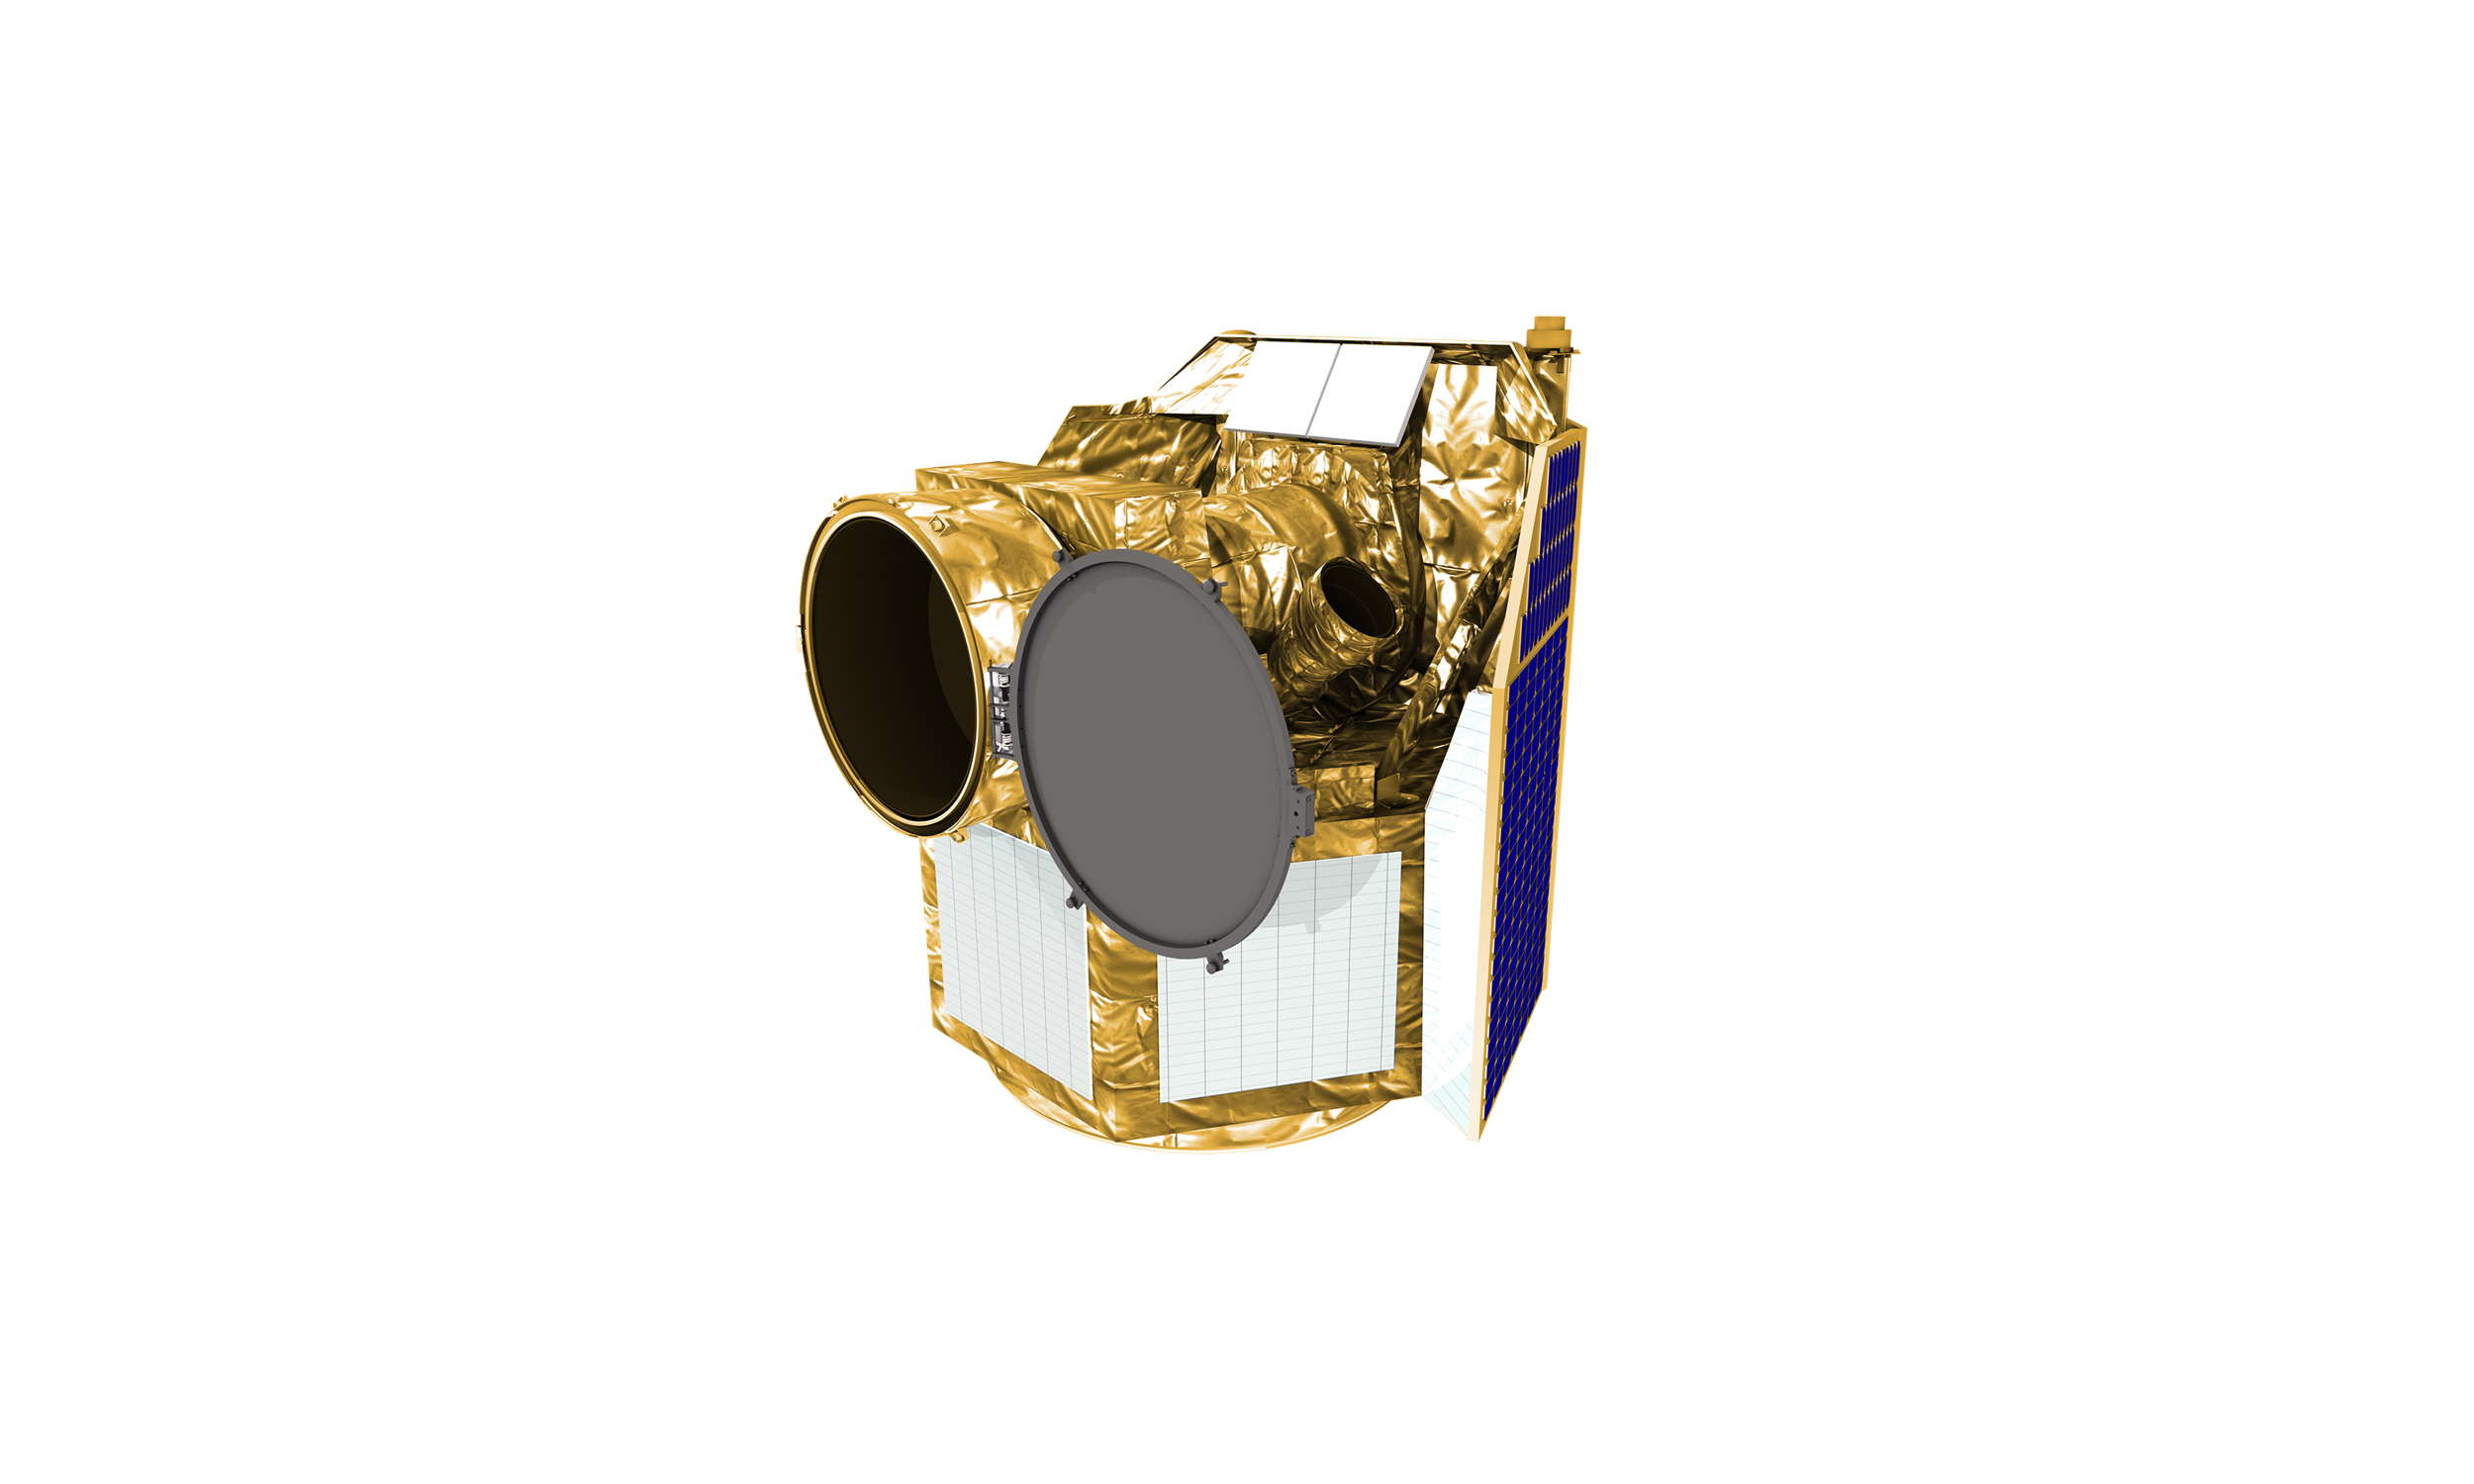 CHEOPS est un satellite scientifique de l’Agence Spatiale Européenne construit sous leadership suisse, notamment par l’Université de Genève (UNIGE).